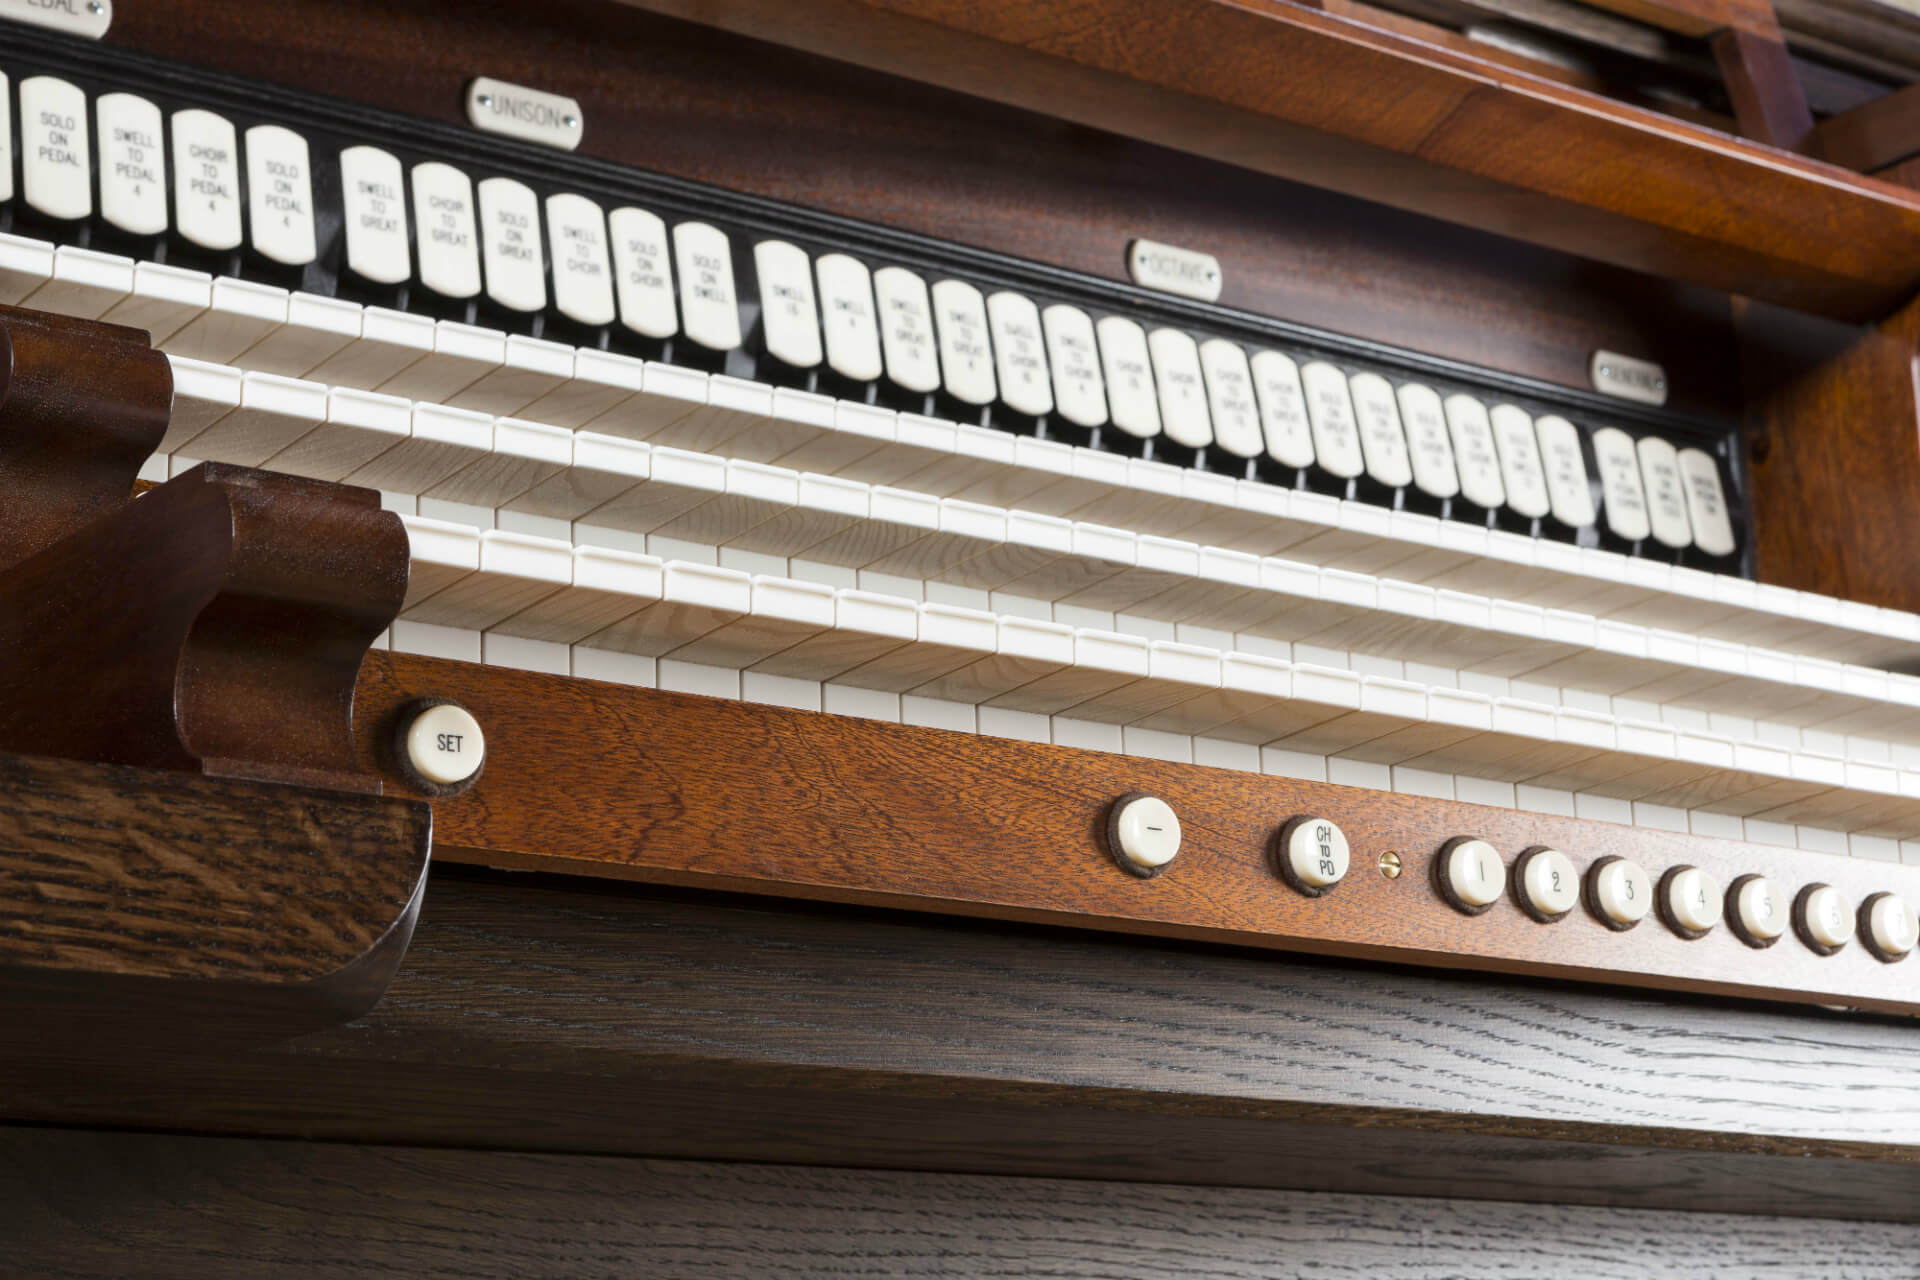 Skinner Style Organ - keys from below